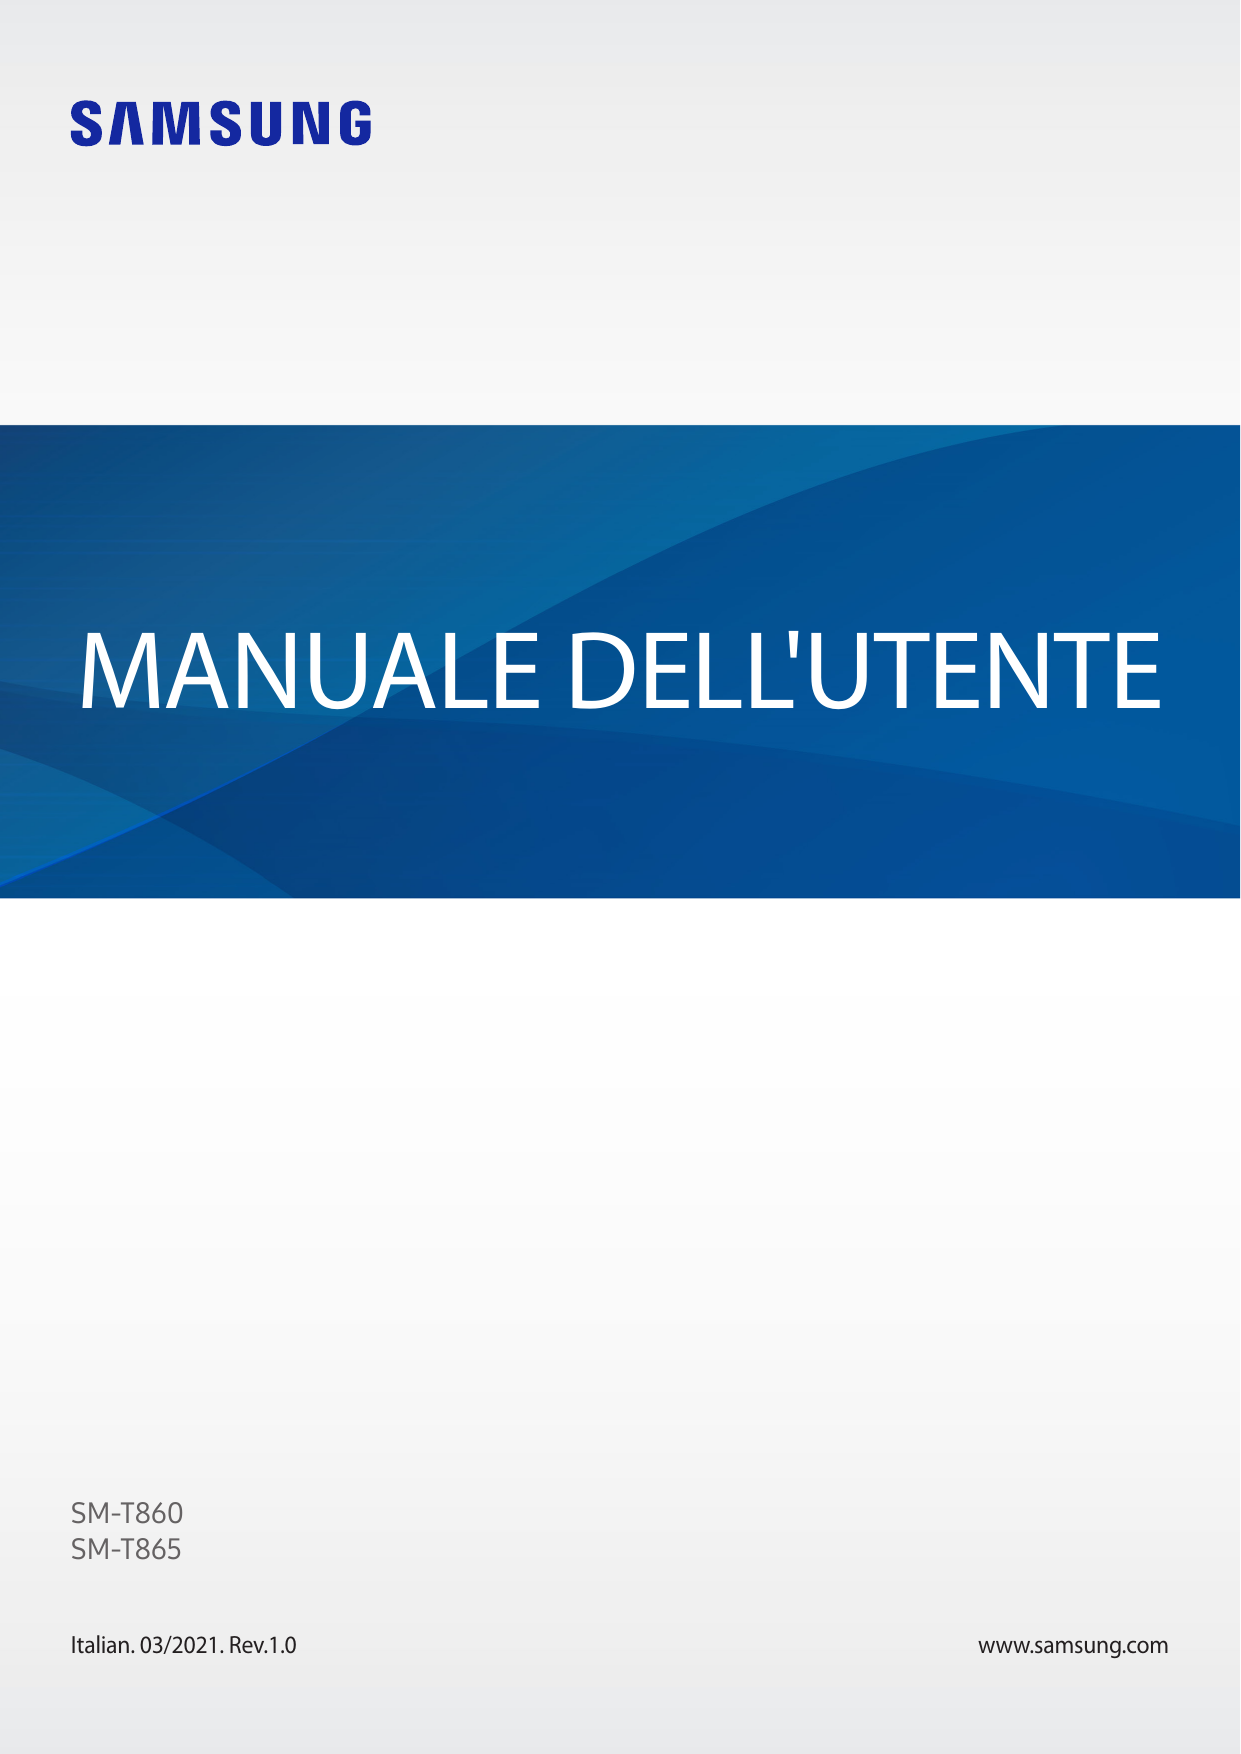 MANUALE DELL'UTENTESM-T860SM-T865Italian. 03/2021. Rev.1.0www.samsung.com